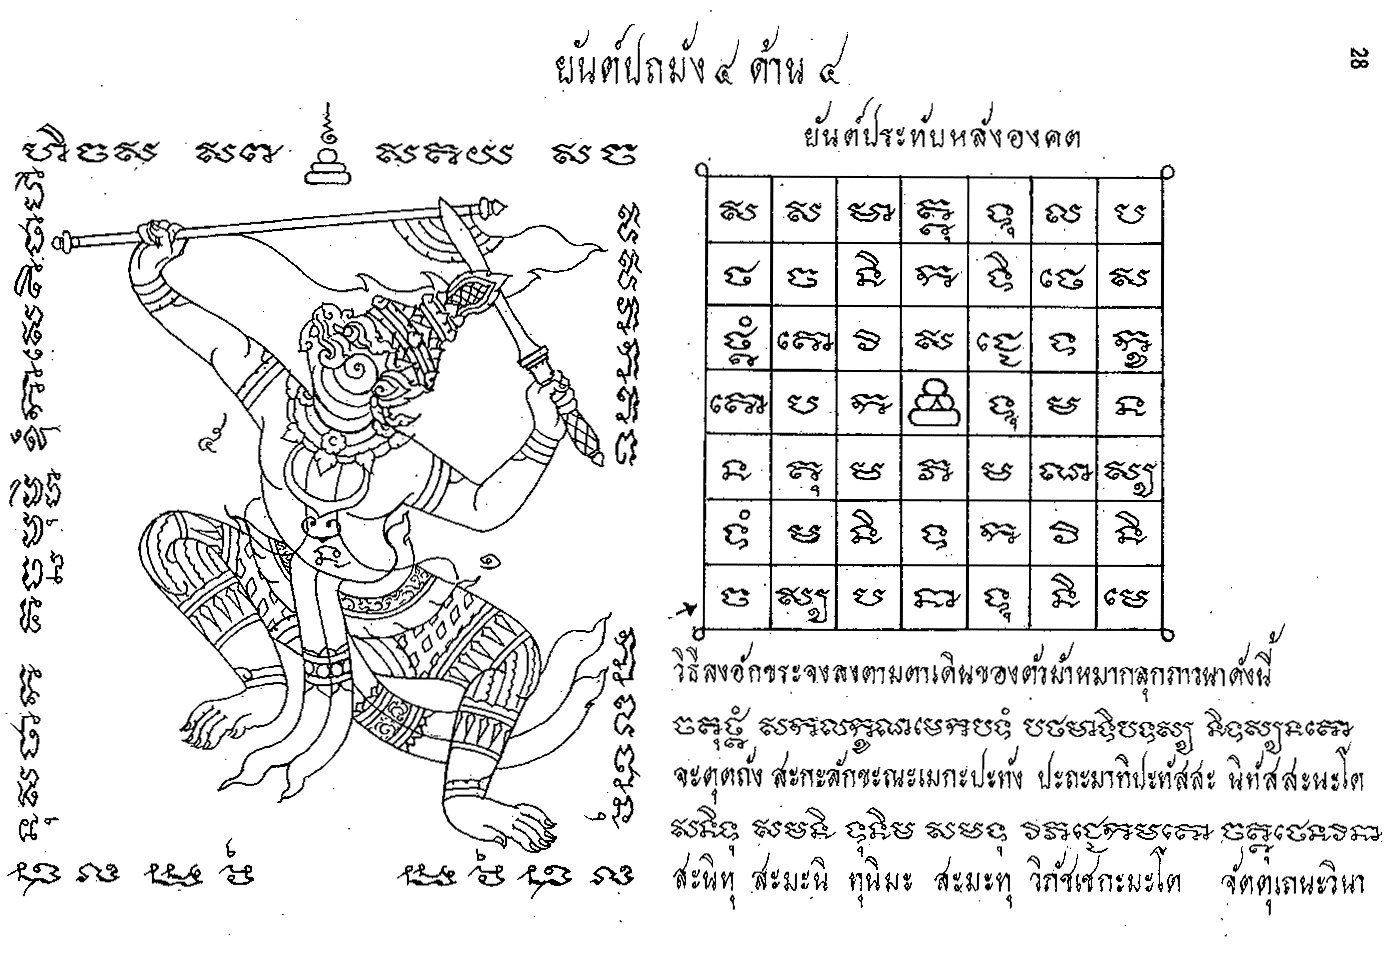 Язык камбоджи: изучаем кхмерский самостоятельно. язык камбоджи: изучаем кхмерский самостоятельно кхмерский алфавит 72 буквы